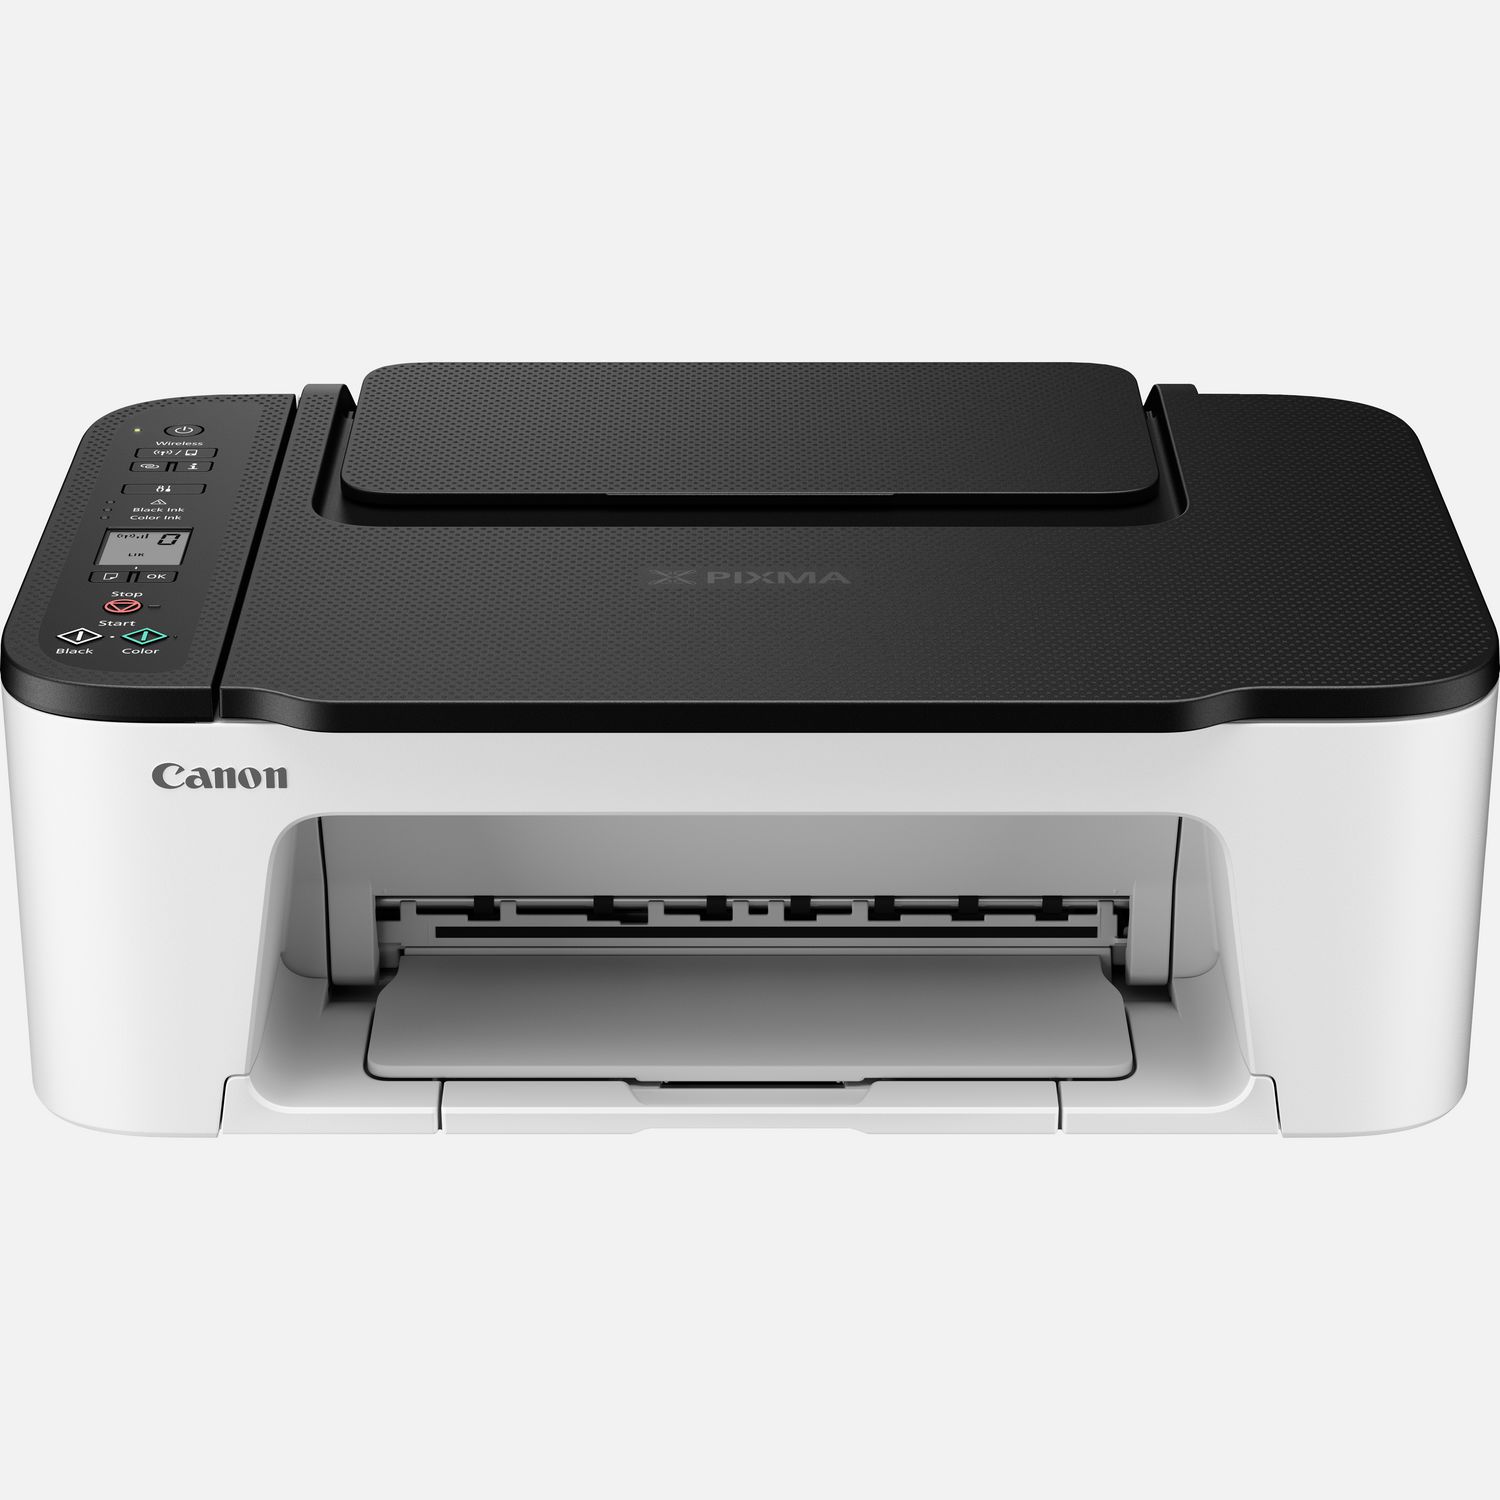 Stampante fotografica wireless inkjet a colori multifunzione Canon PIXMA TS3452, bianca con parte superiore nera